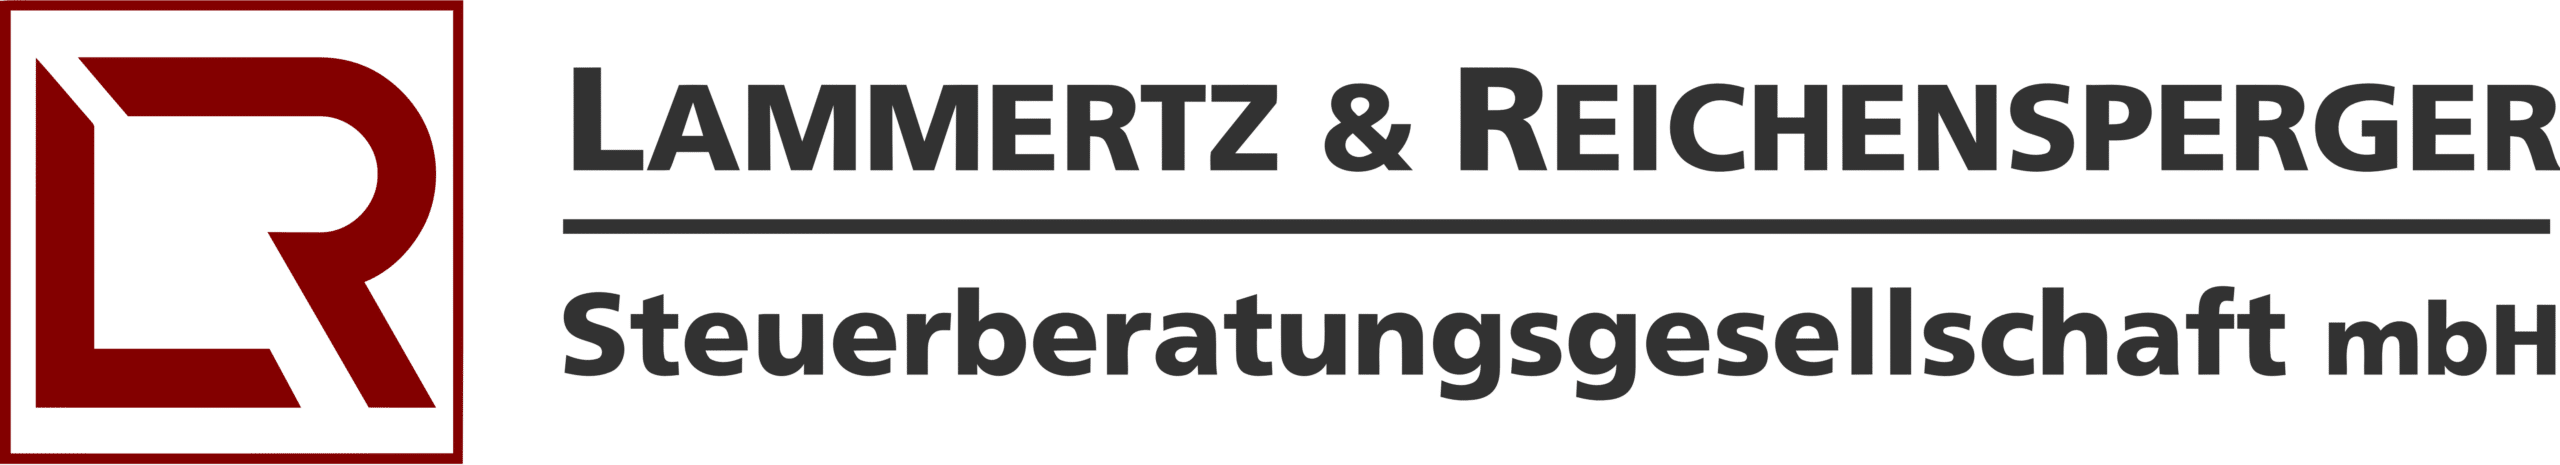 Lammertz & Reichensperger